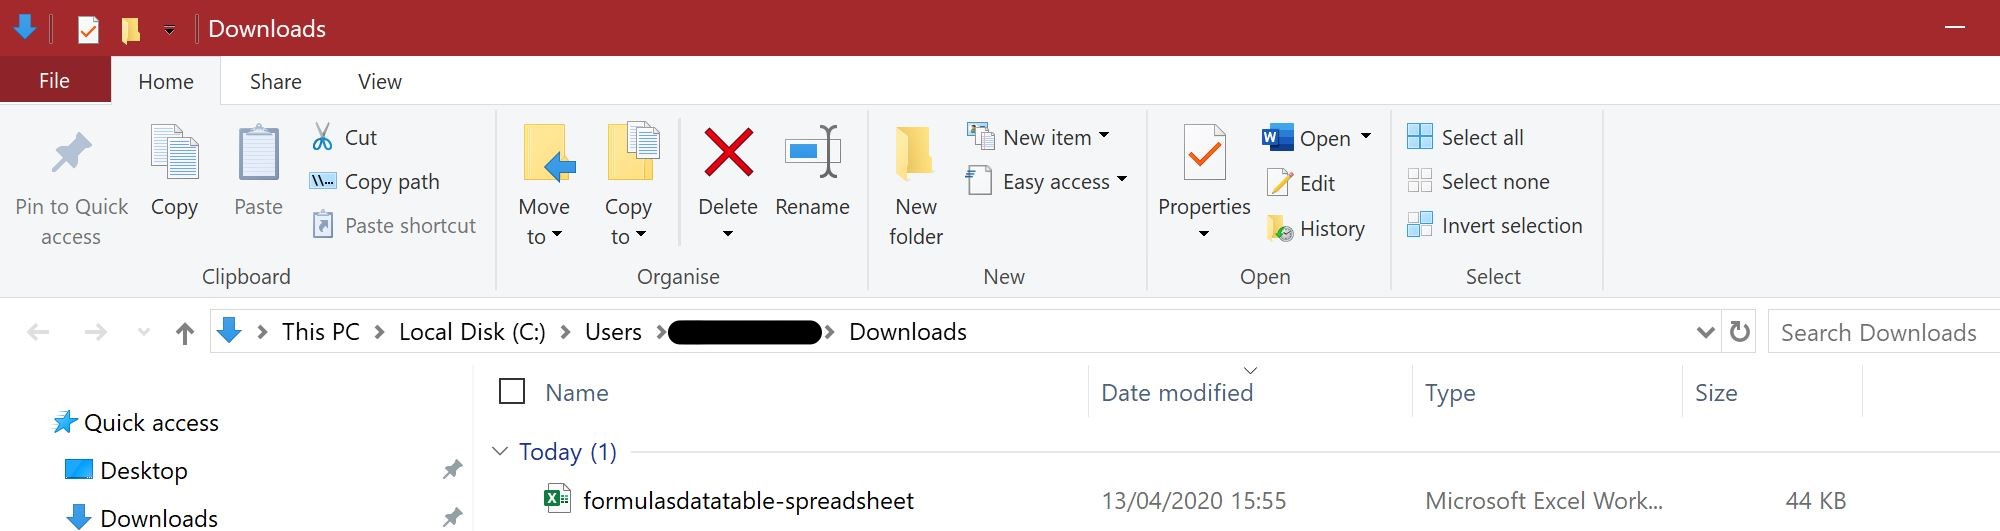 Screenshot of 'Downloads' folder